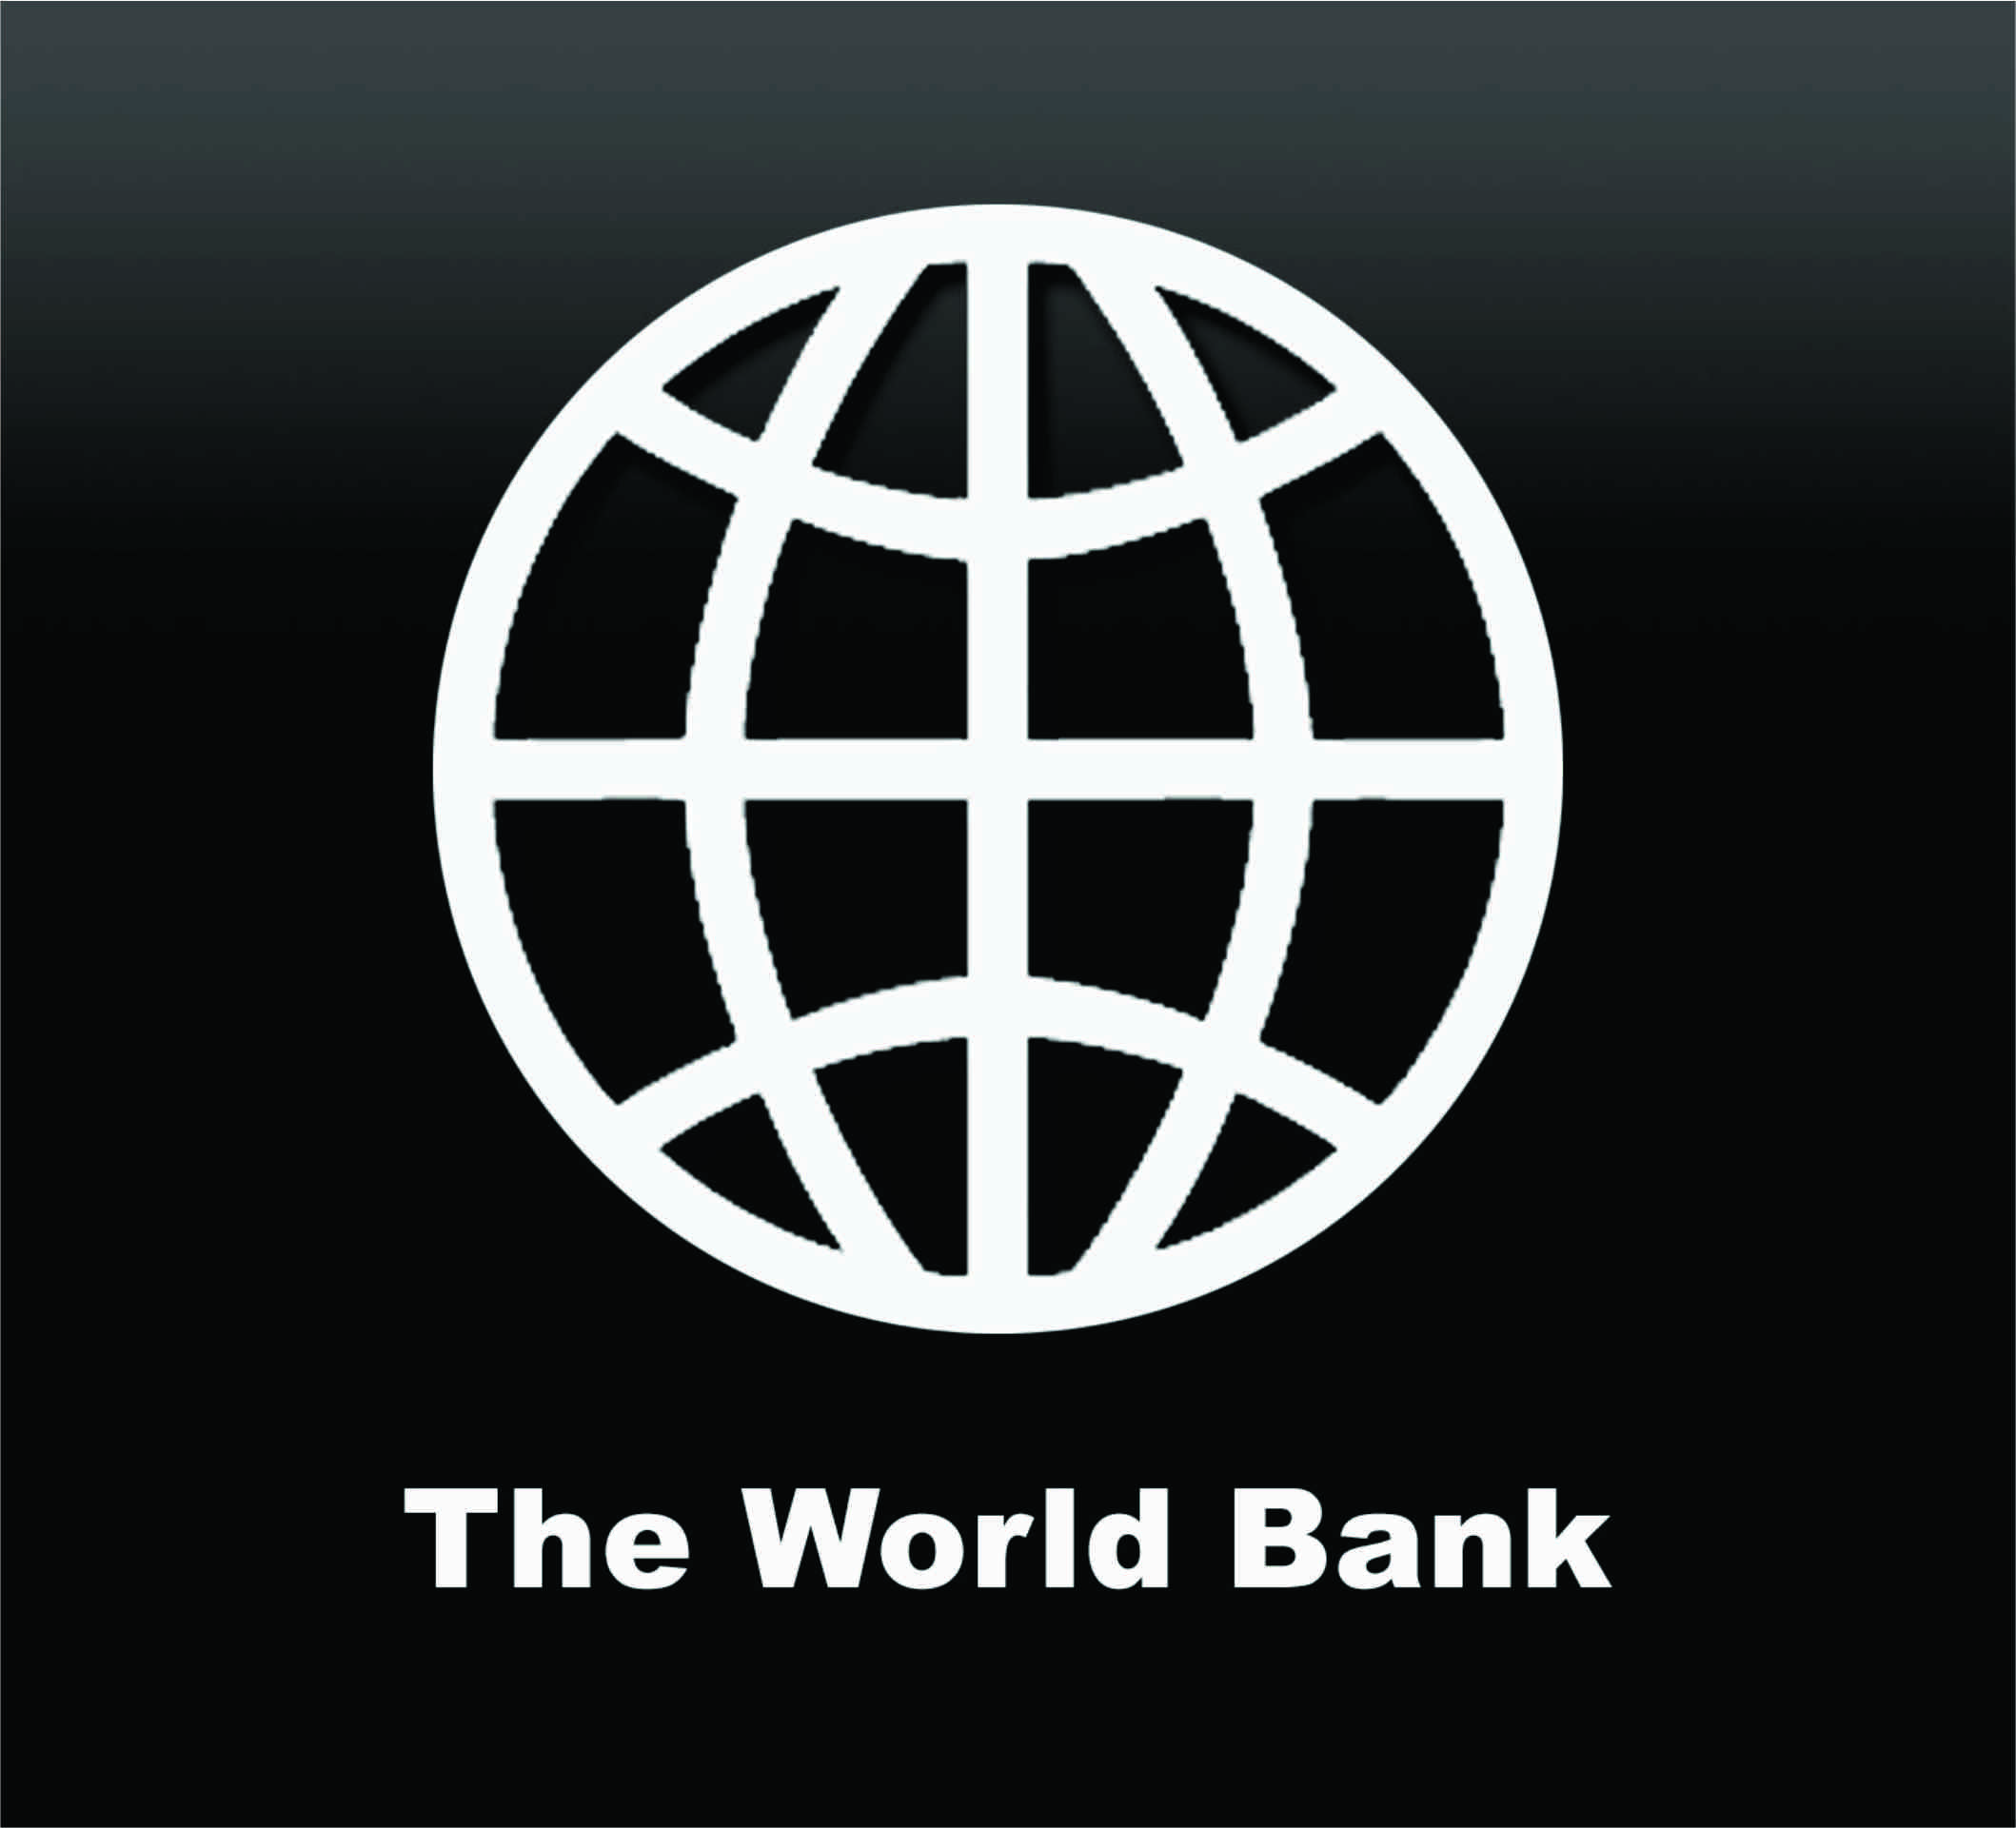 World bank is. Всемирного банка (the World Bank). Всемирный банк логотип. Логотипы Мировых банков. Группа Всемирного банка лого.